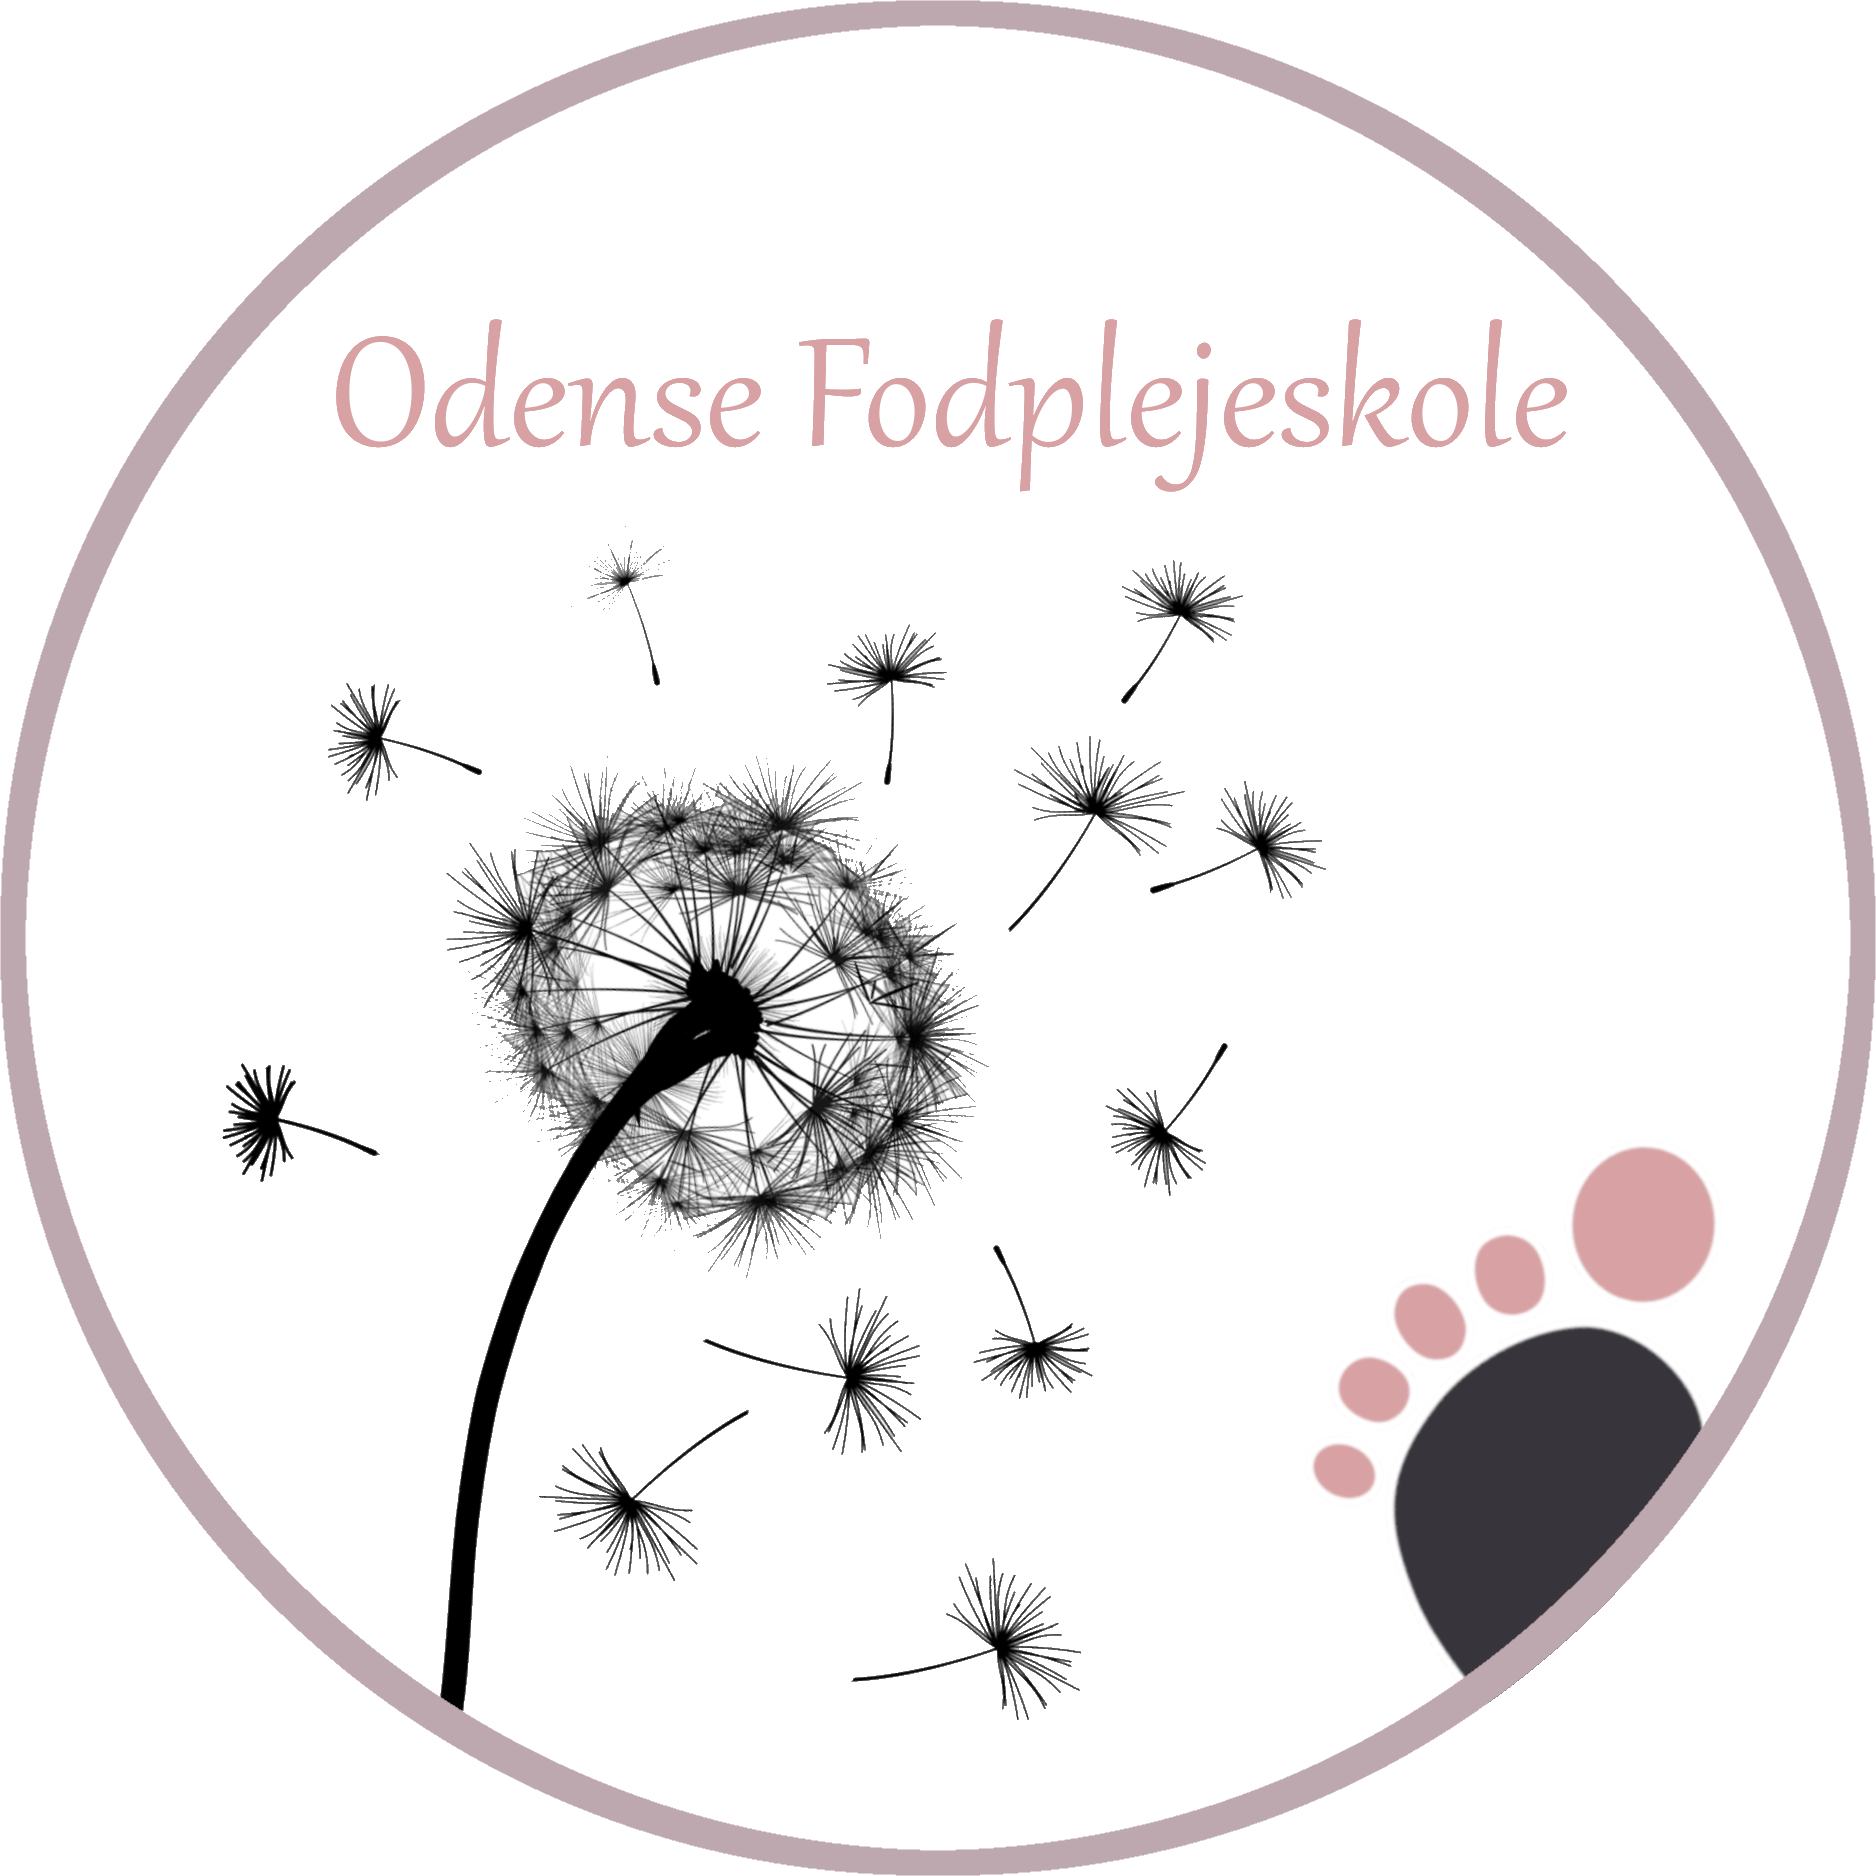 Odense Fodplejeskole